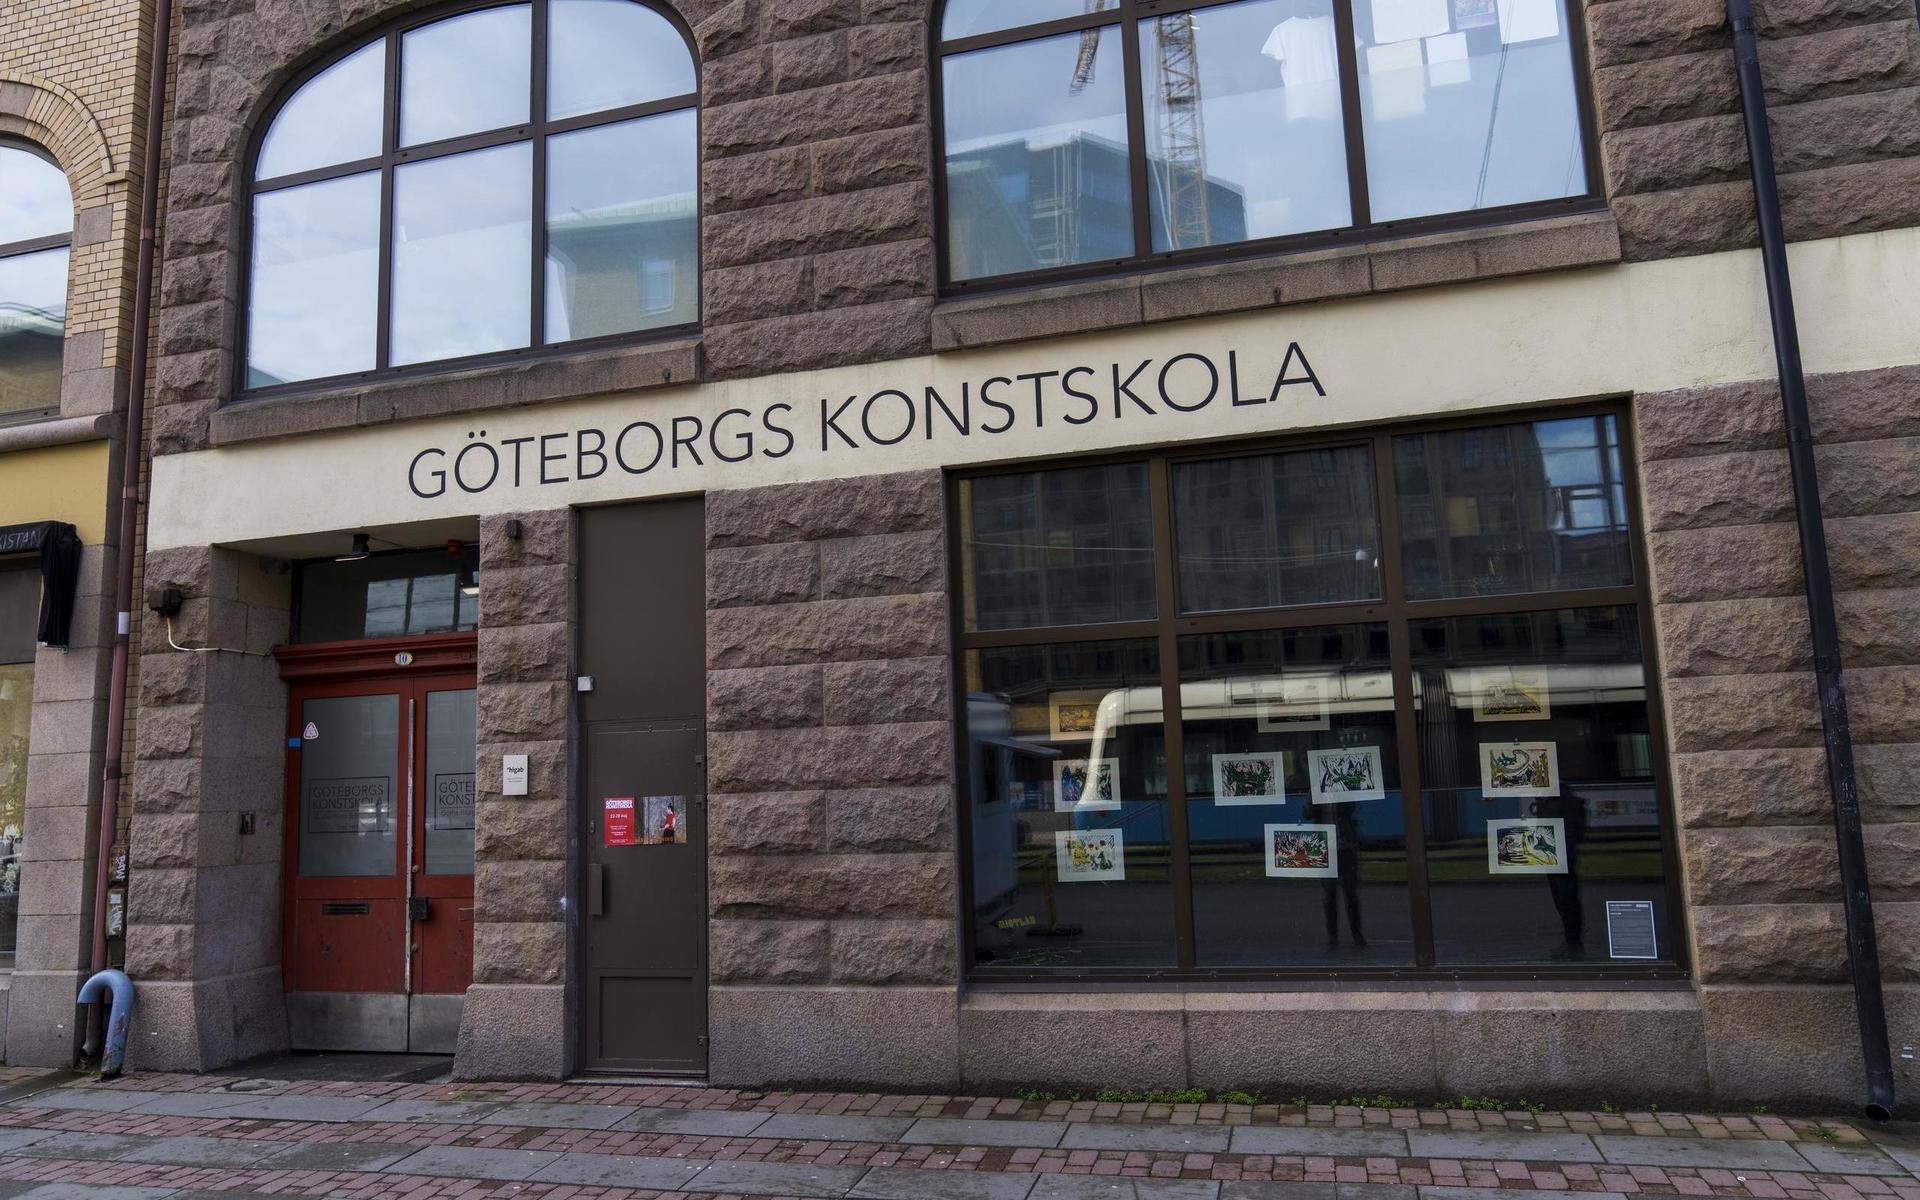 Inte heller Brewhouse där Göteborgs konstskola ligger kommer att säljas, efter kommunstyrelsens nej.